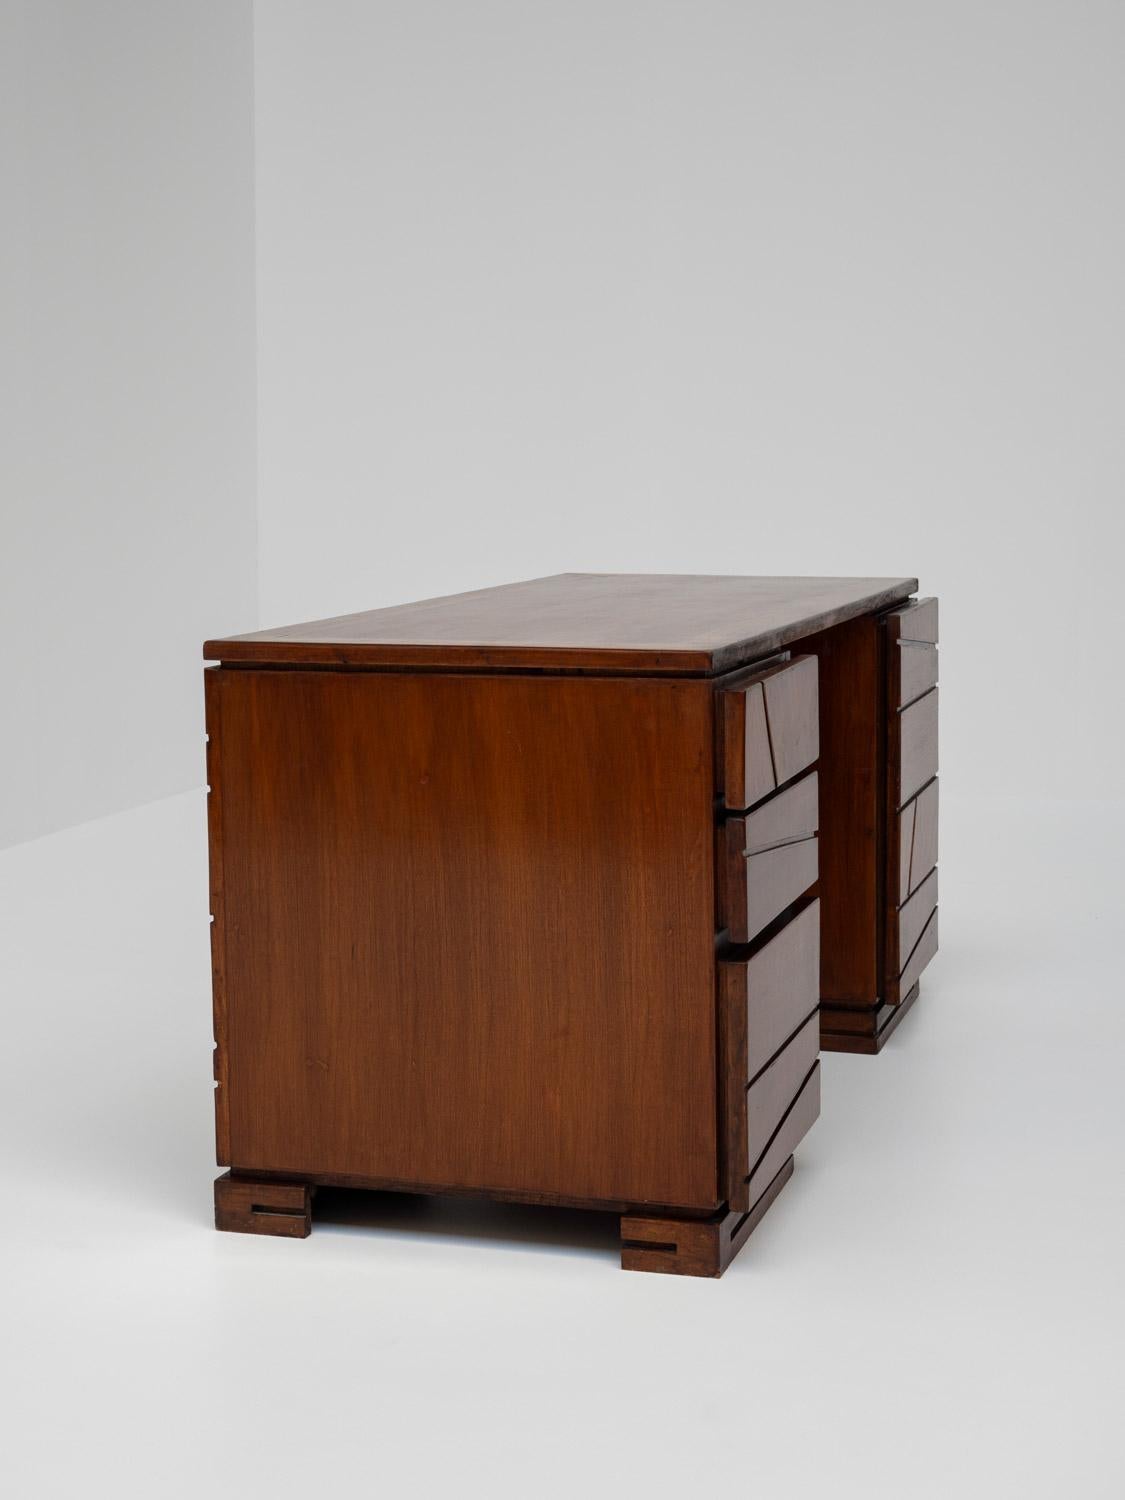 French Wooden Modernist Desk, France 1970s For Sale 2